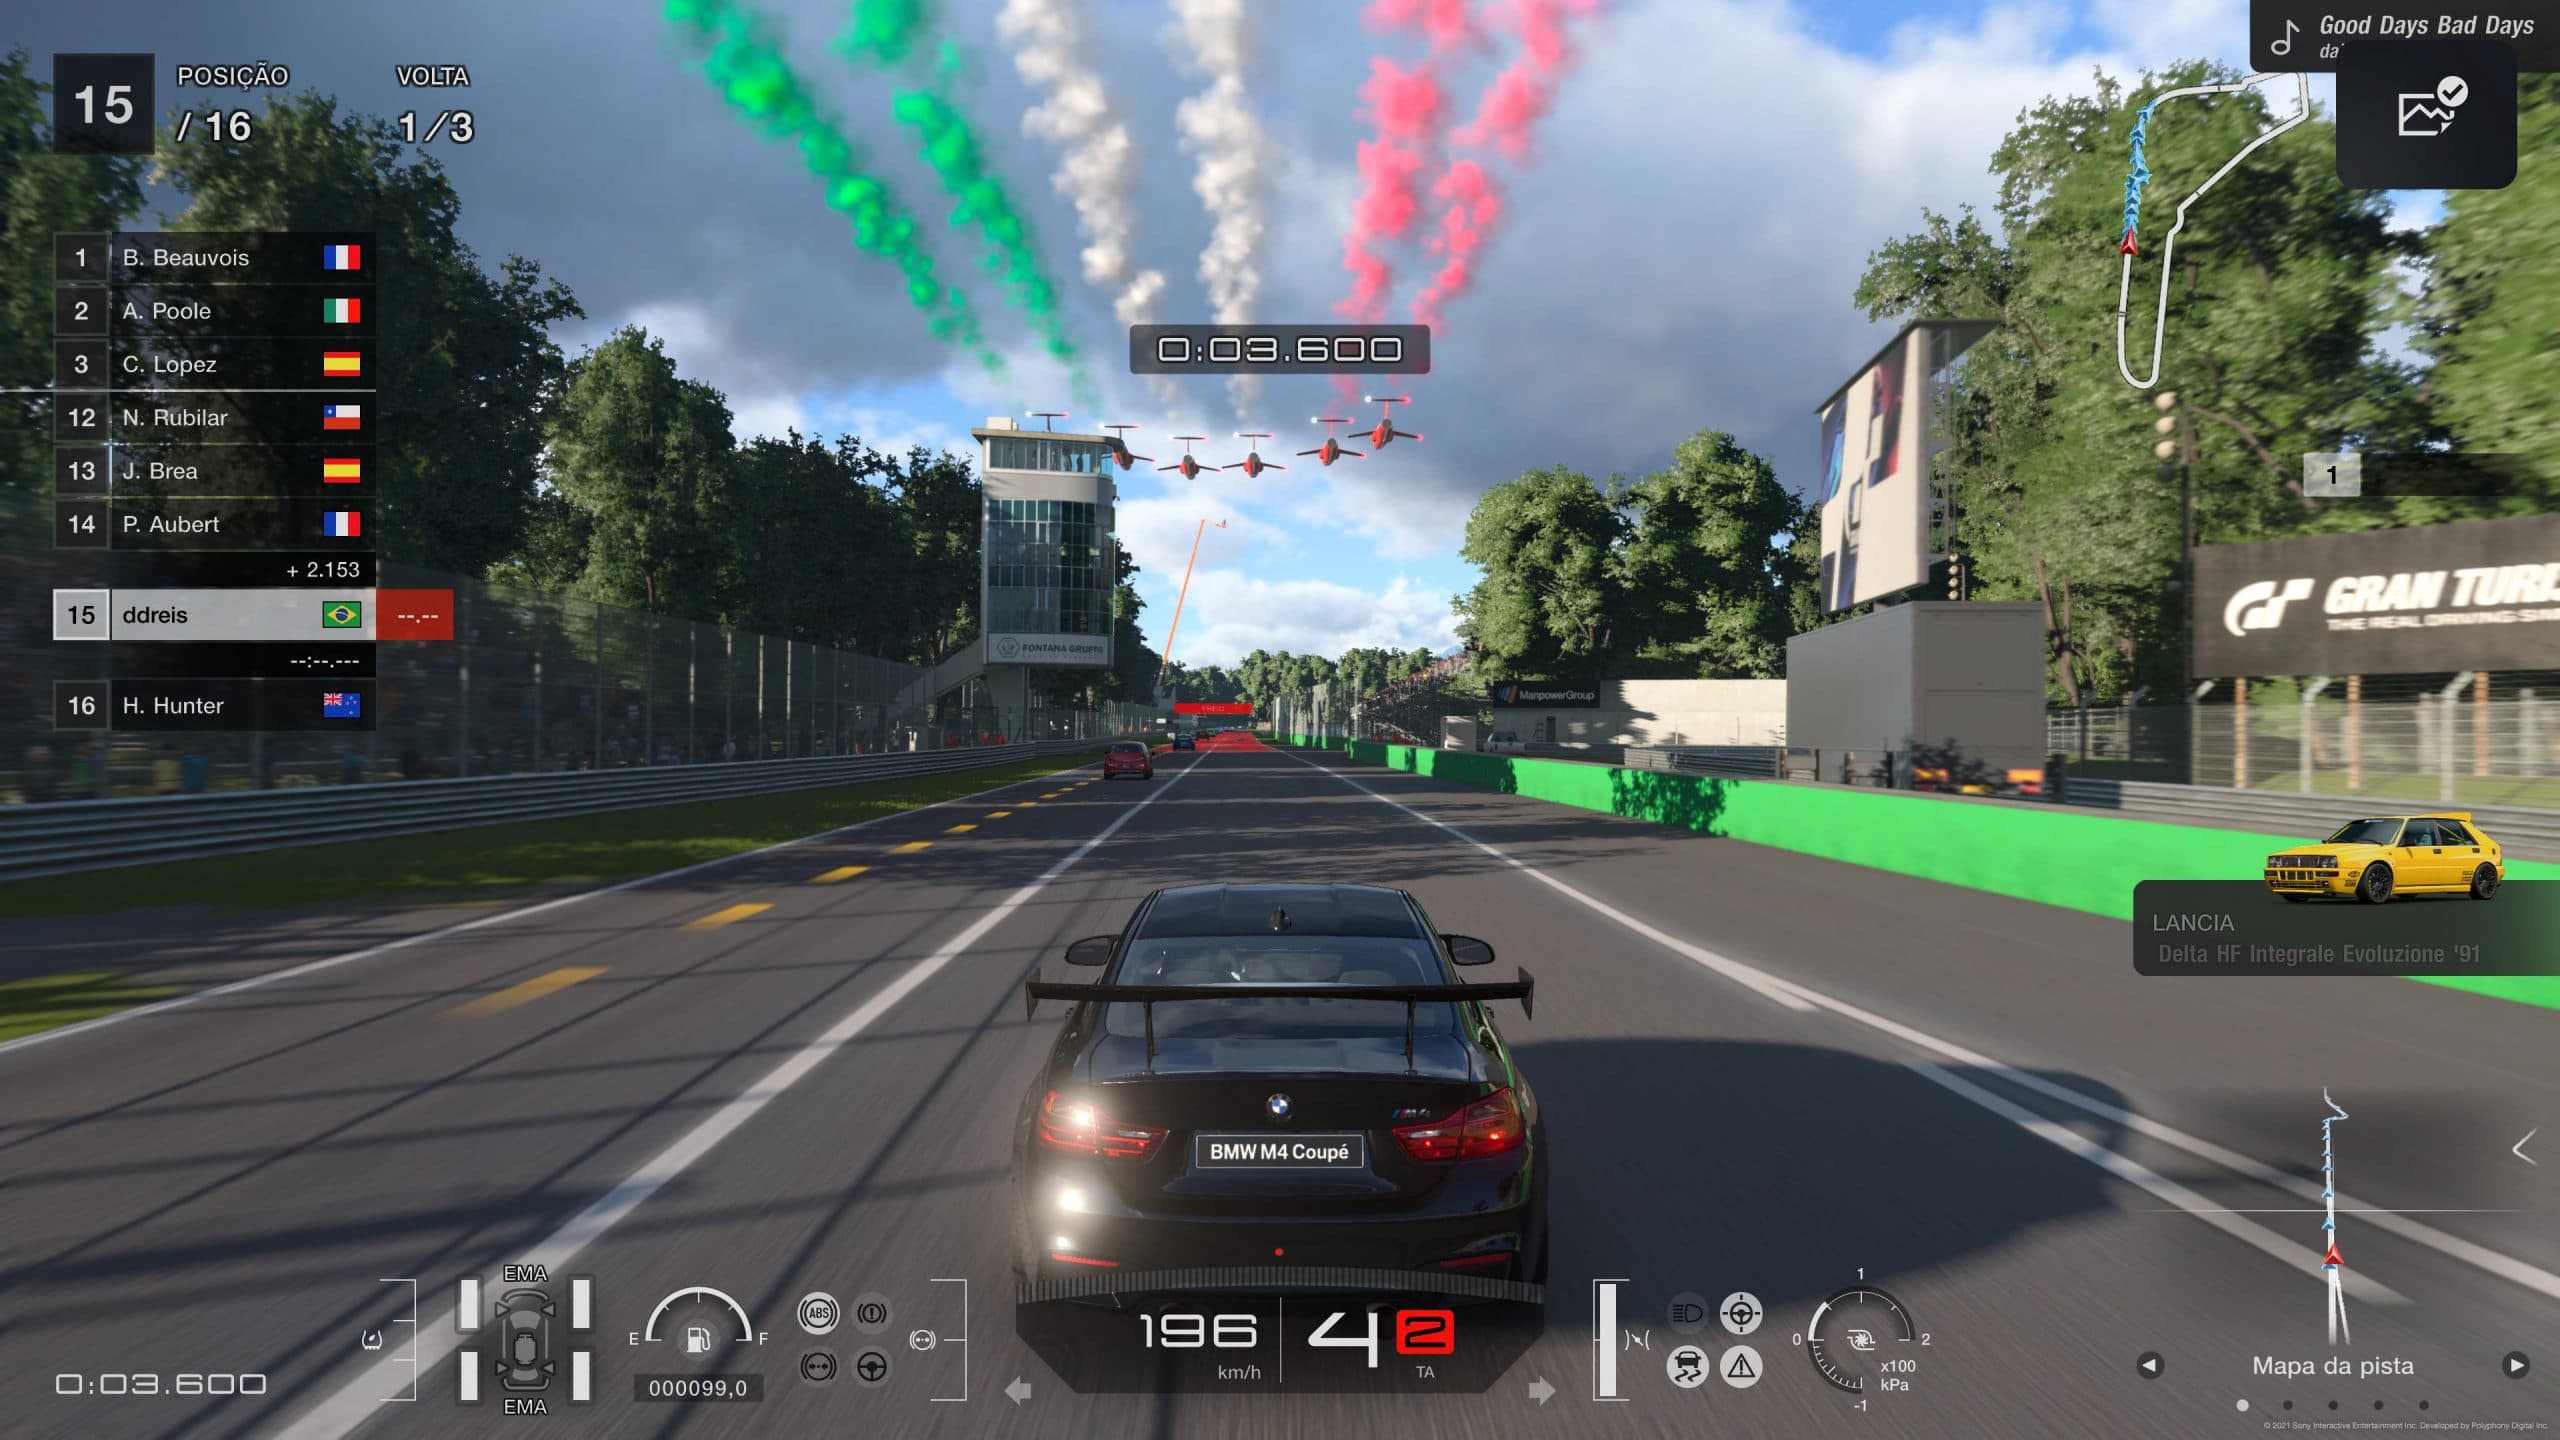 Gran Turismo 7 se torna o jogo da Sony com a menor média de usuário no